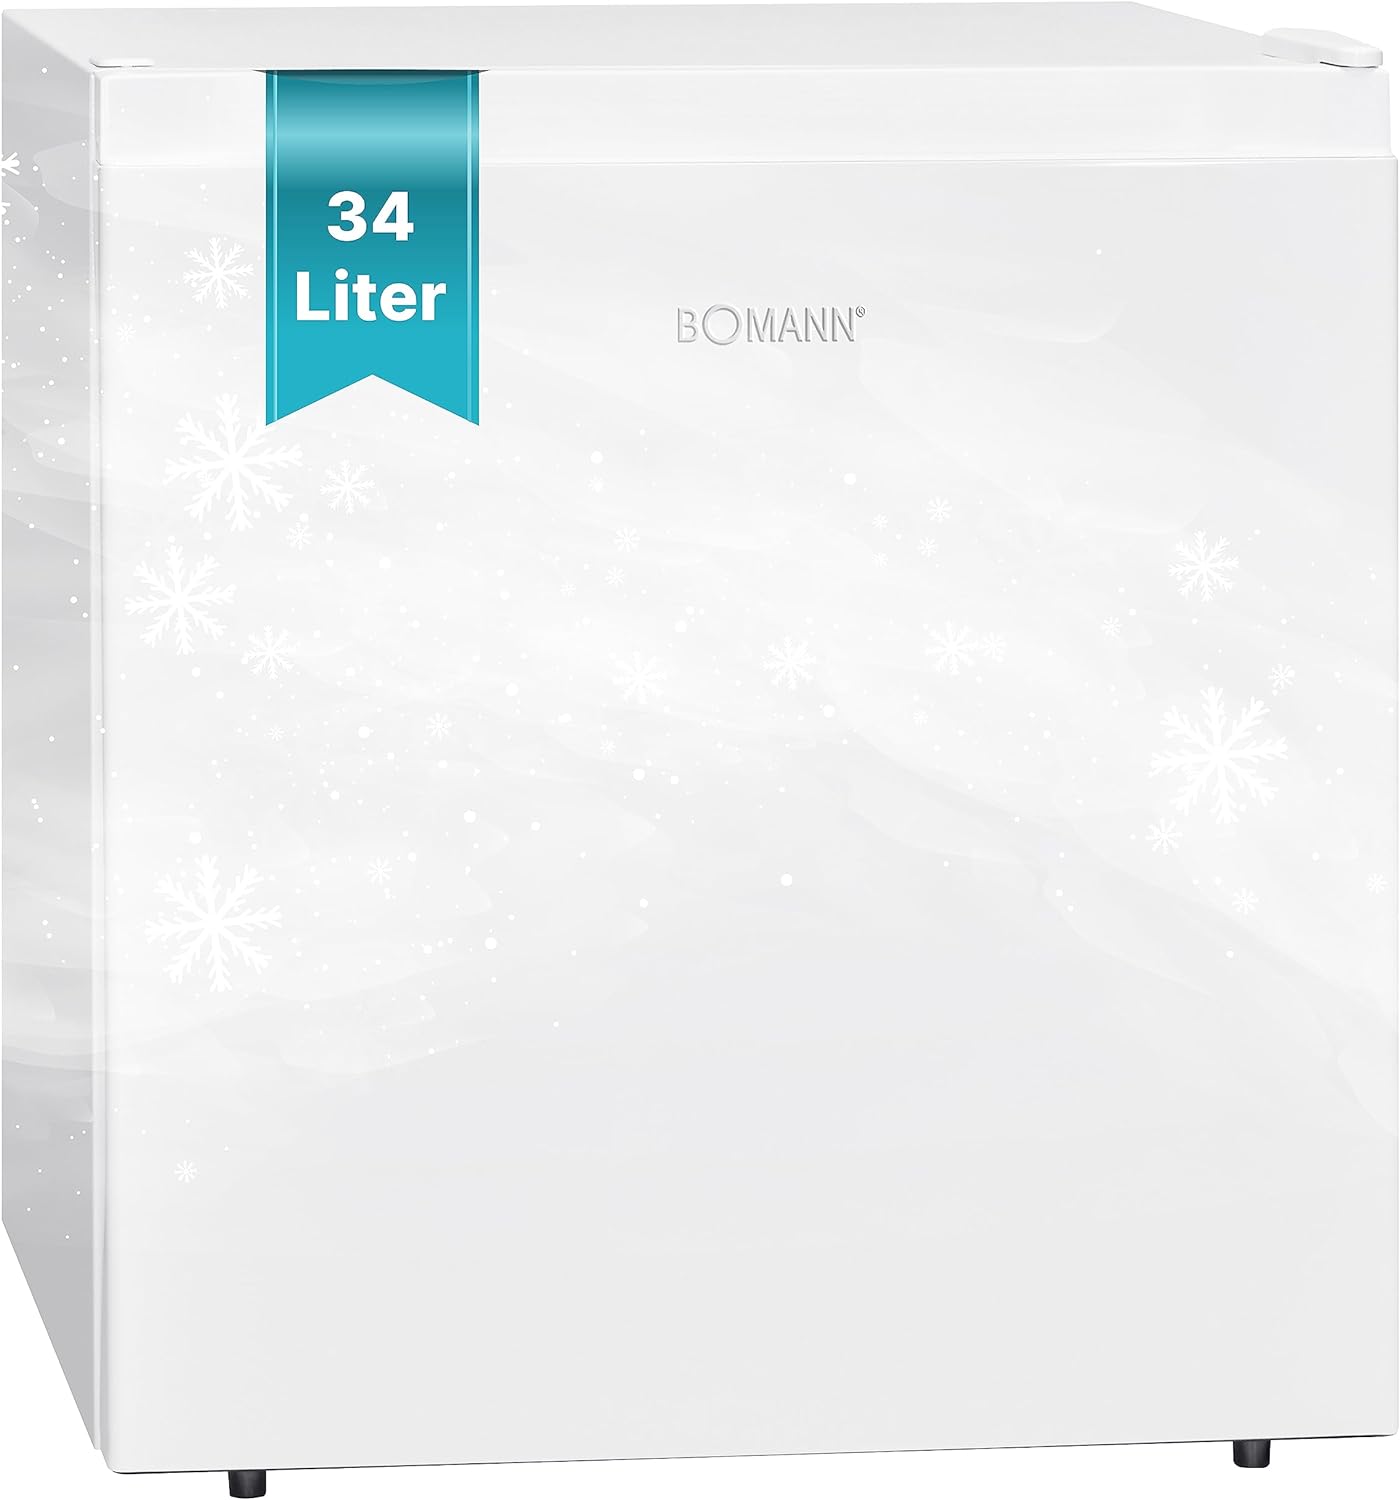 Bomann® Congelatore piccolo con capacità utile da 34 l, mini congelatore con ripiano in vetro estraibile, congelatore con fermata della porta intercambiabile e regolazione continua della temperatura,